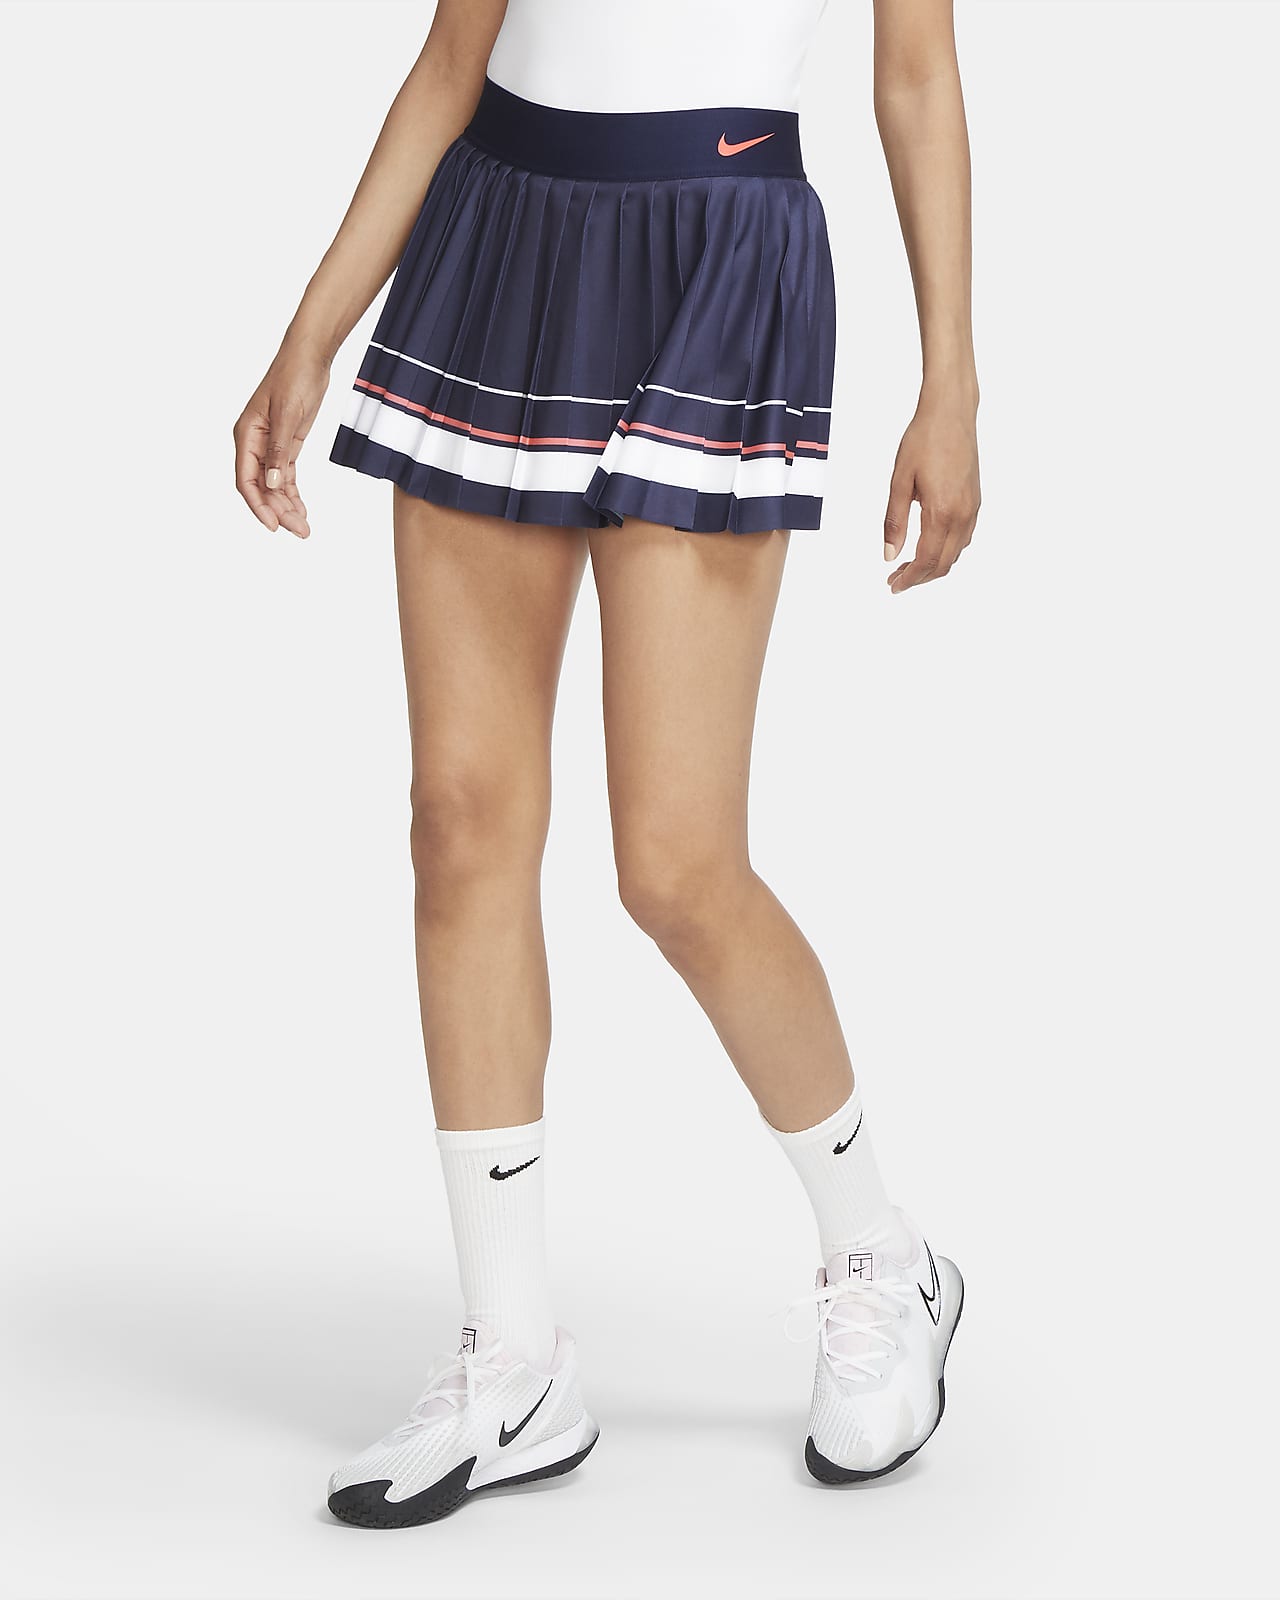 Falda de tenis para mujer Maria. Nike.com